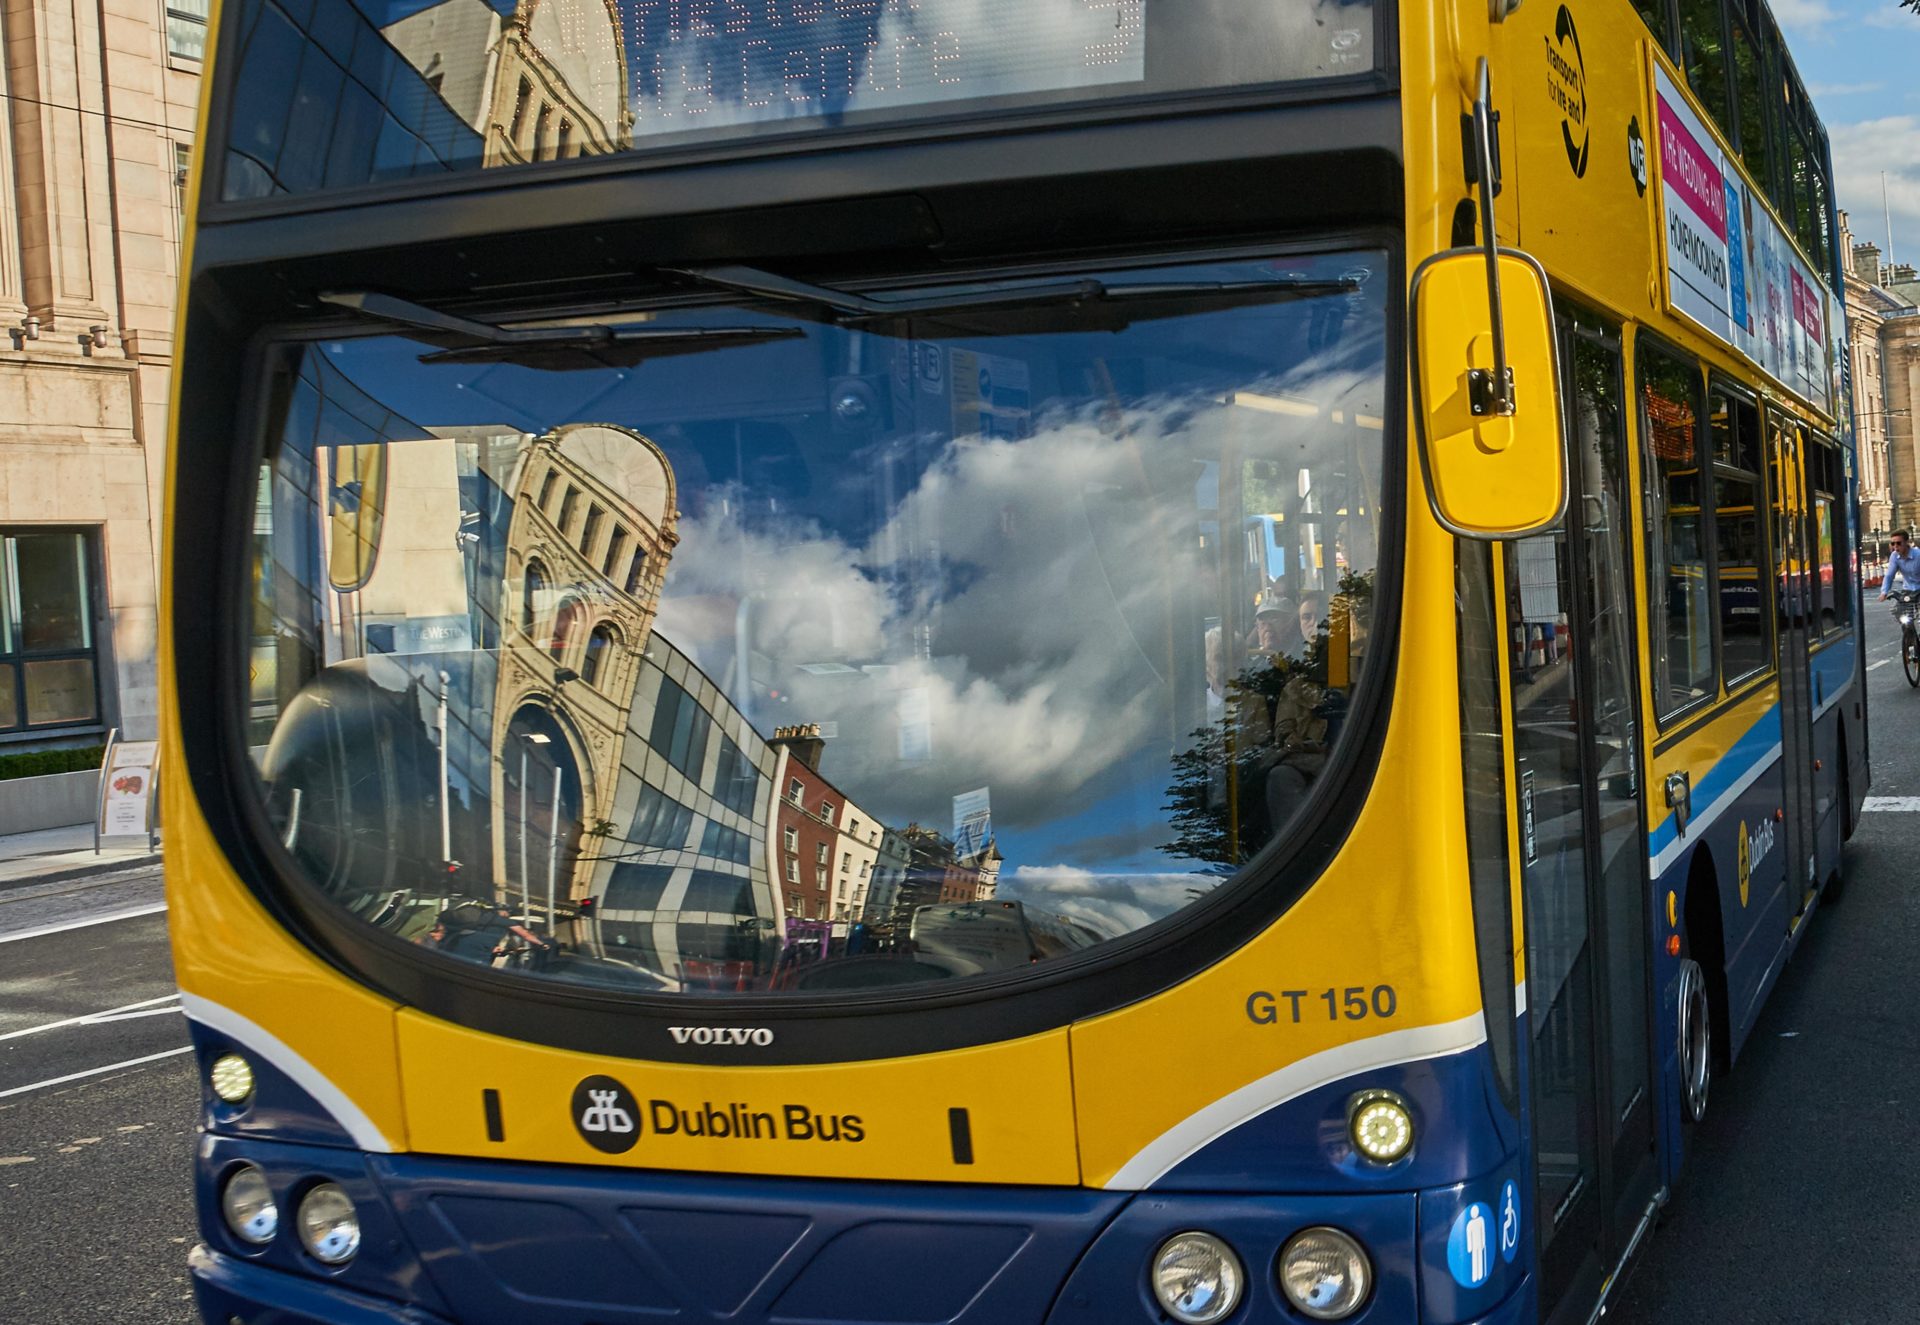 A Dublin Bus in Dublin city centre.